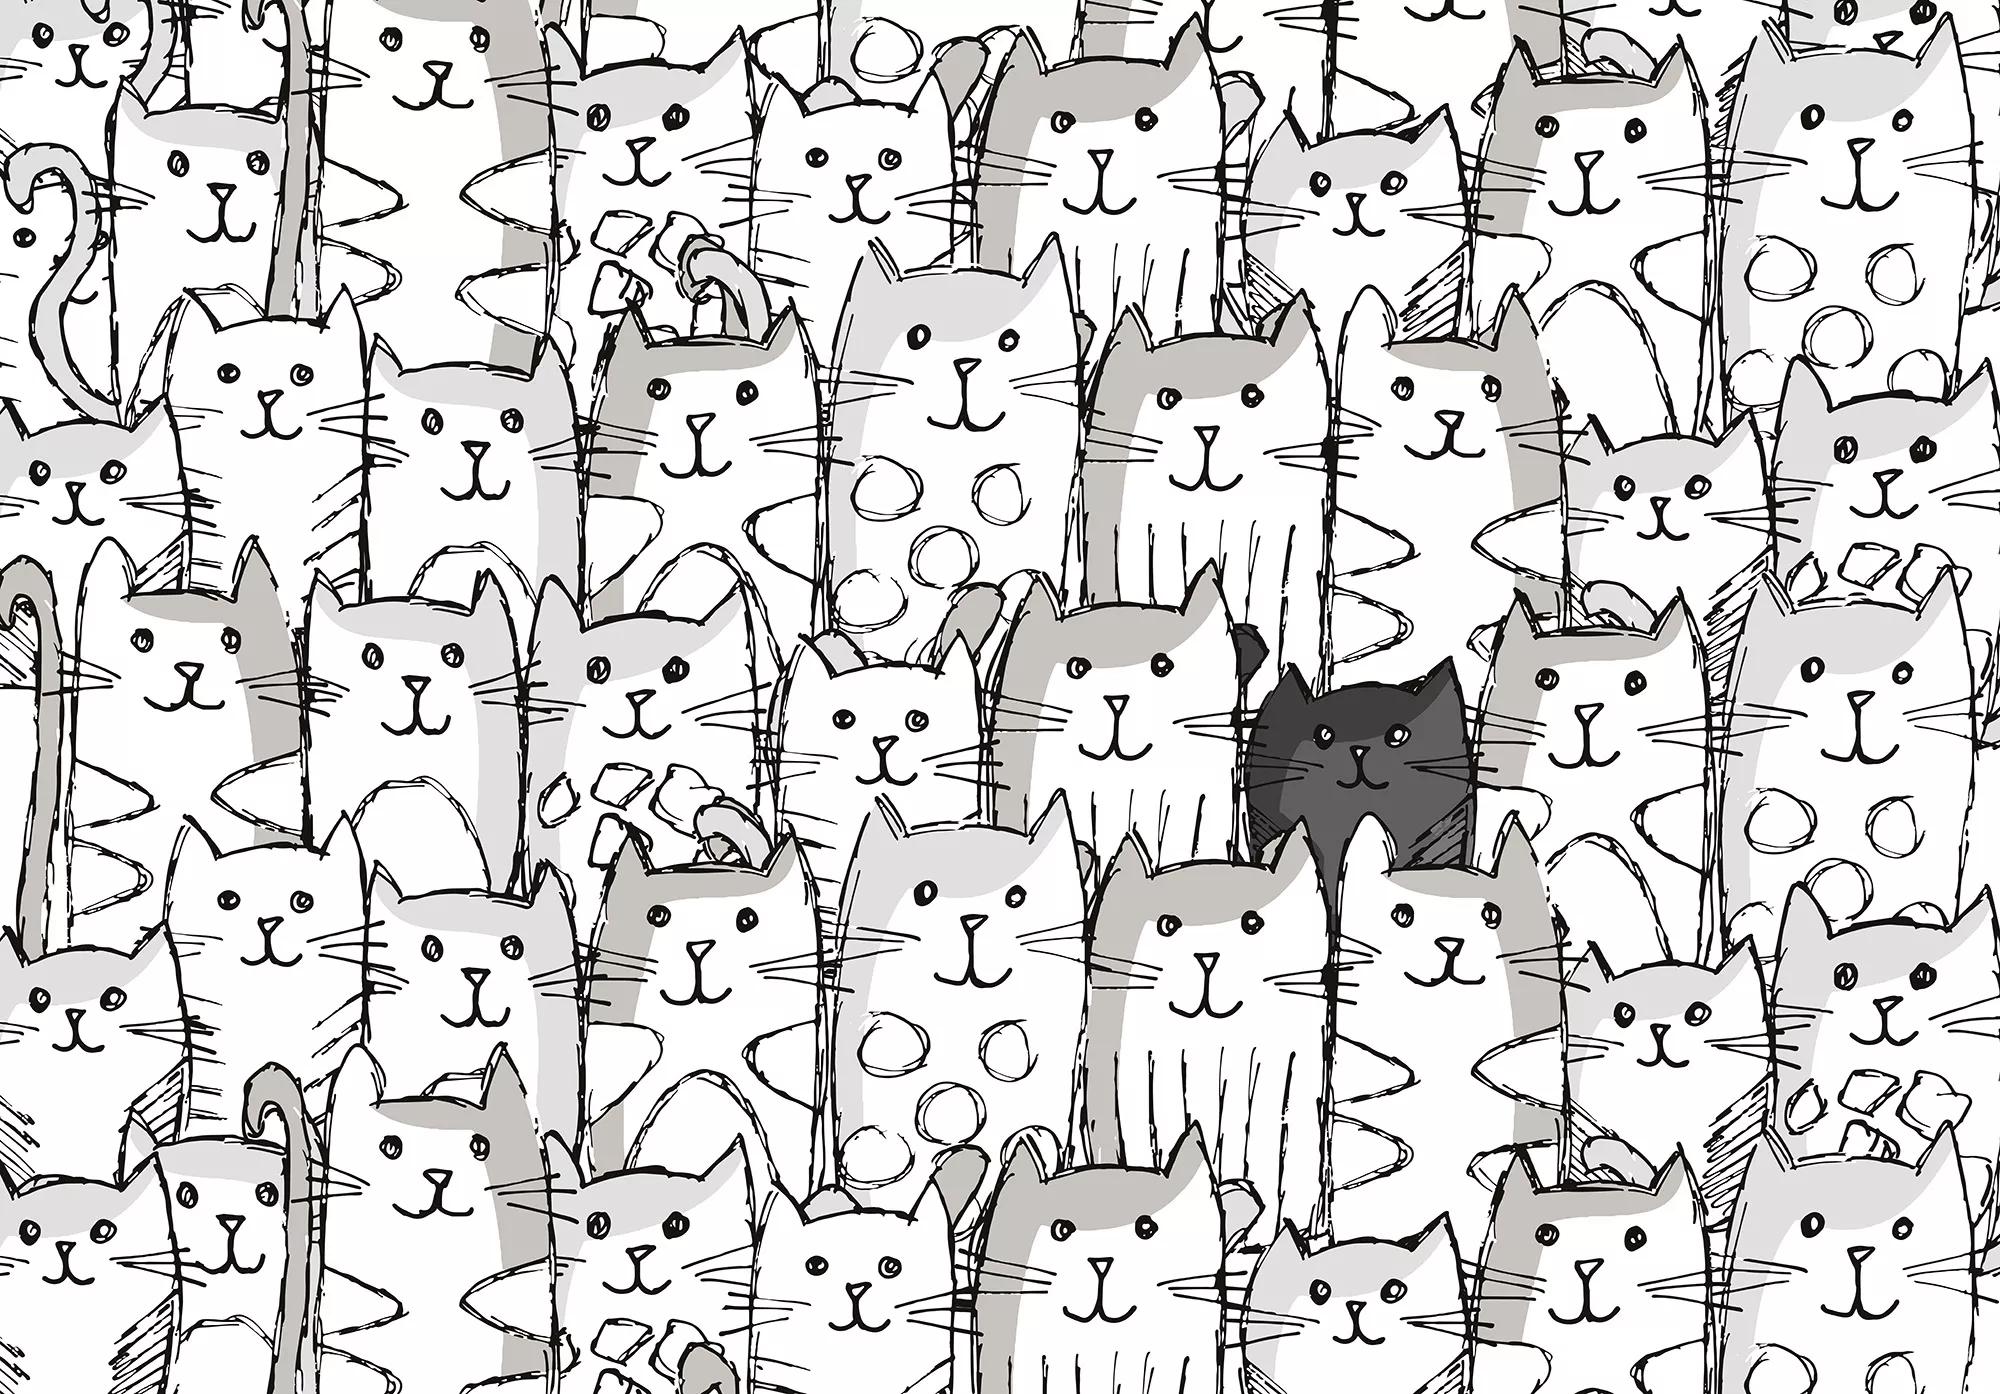 Fali poszter gyerekszobába rajzolt cica mintákkal minimalista stílusban 368x254 vlies